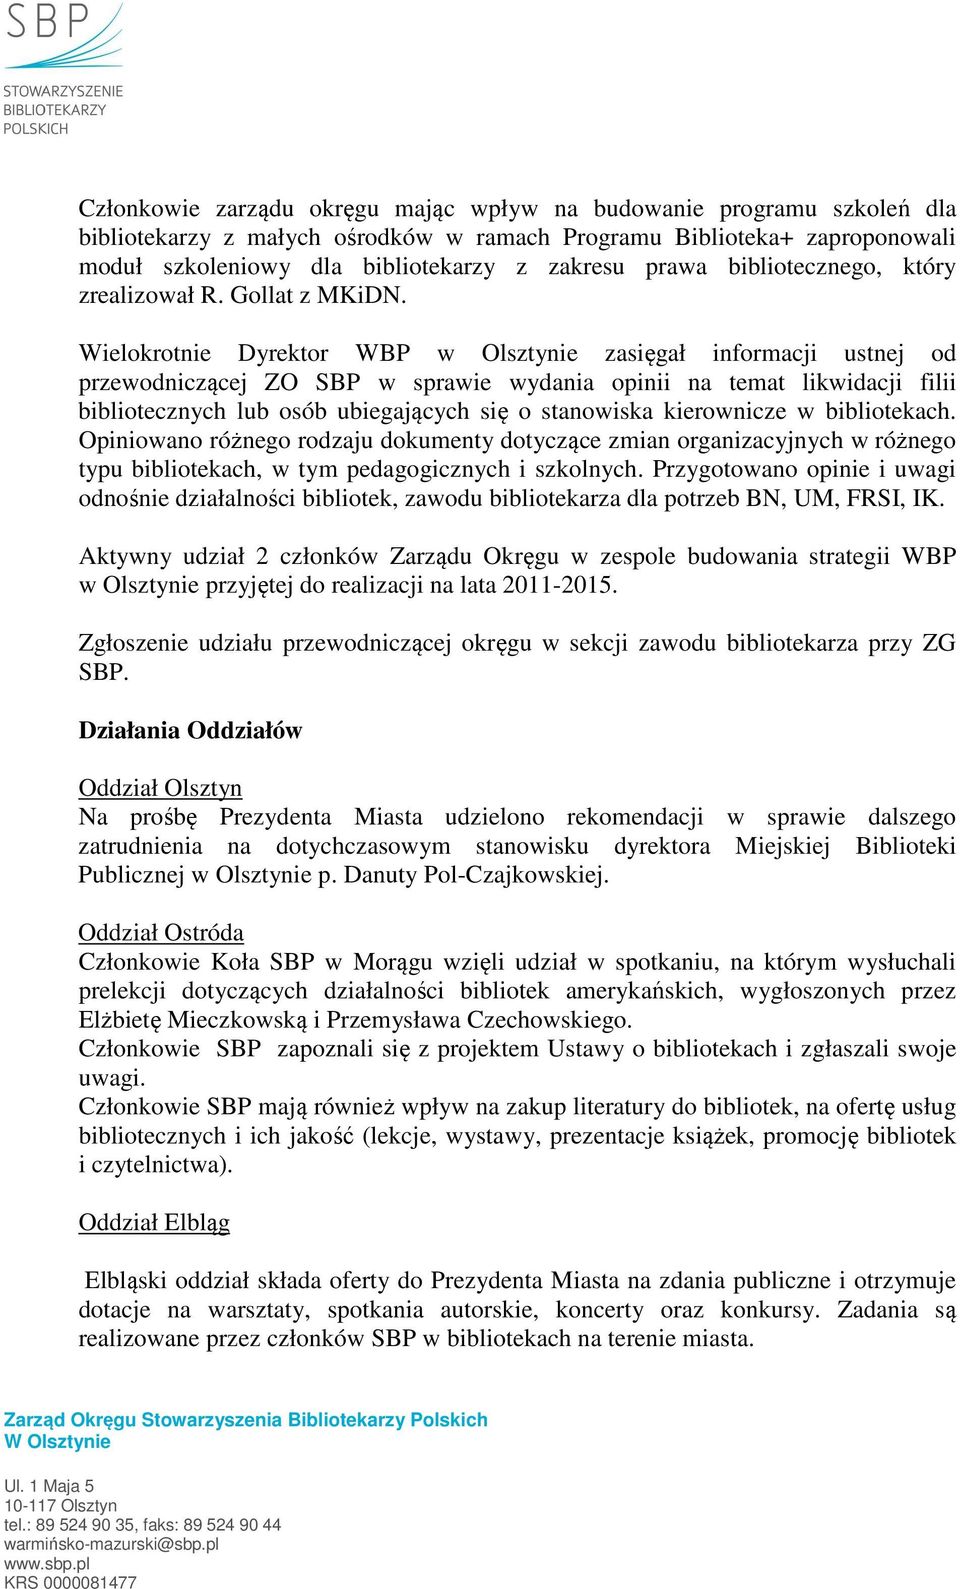 Wielokrotnie Dyrektor WBP w Olsztynie zasięgał informacji ustnej od przewodniczącej ZO SBP w sprawie wydania opinii na temat likwidacji filii bibliotecznych lub osób ubiegających się o stanowiska